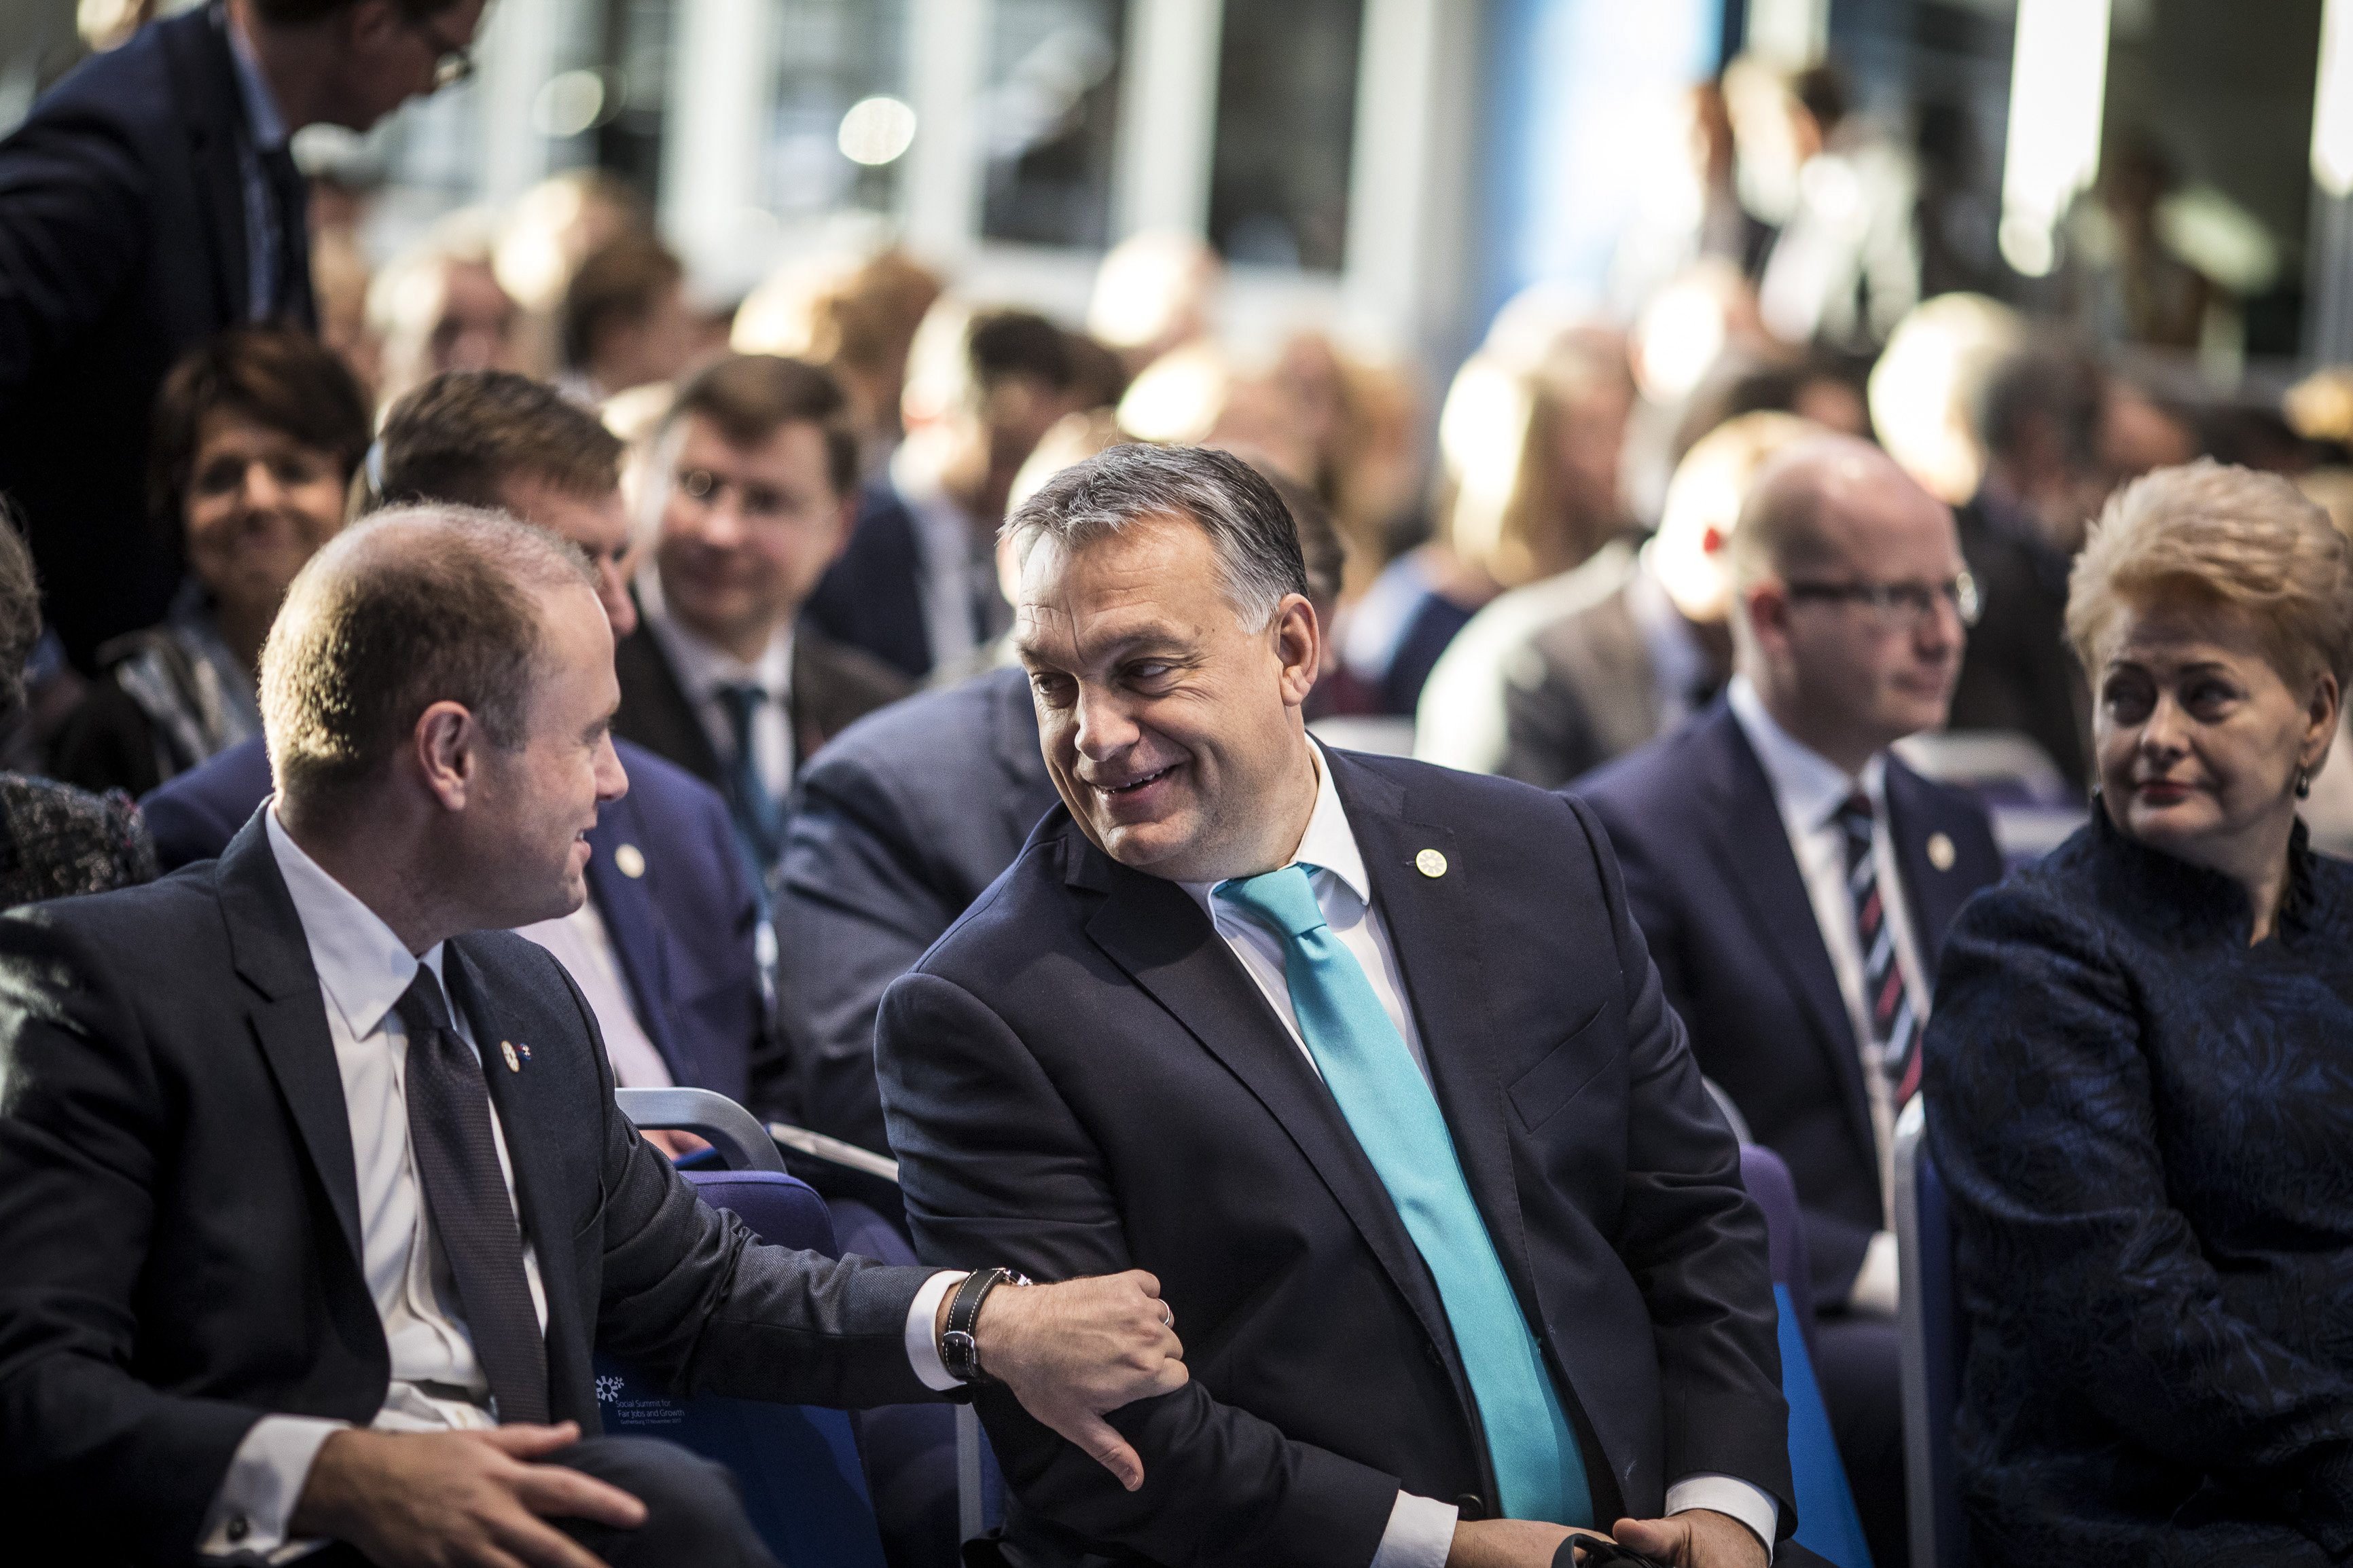 A Miniszterelnöki Sajtóiroda által közreadott képen Orbán Viktor miniszterelnök (k) és Joseph Muscat máltai miniszterelnök (b) beszélget az Európai Unió szociális jogokkal foglalkozó csúcstalálkozóján Göteborgban 2017. november 17-én